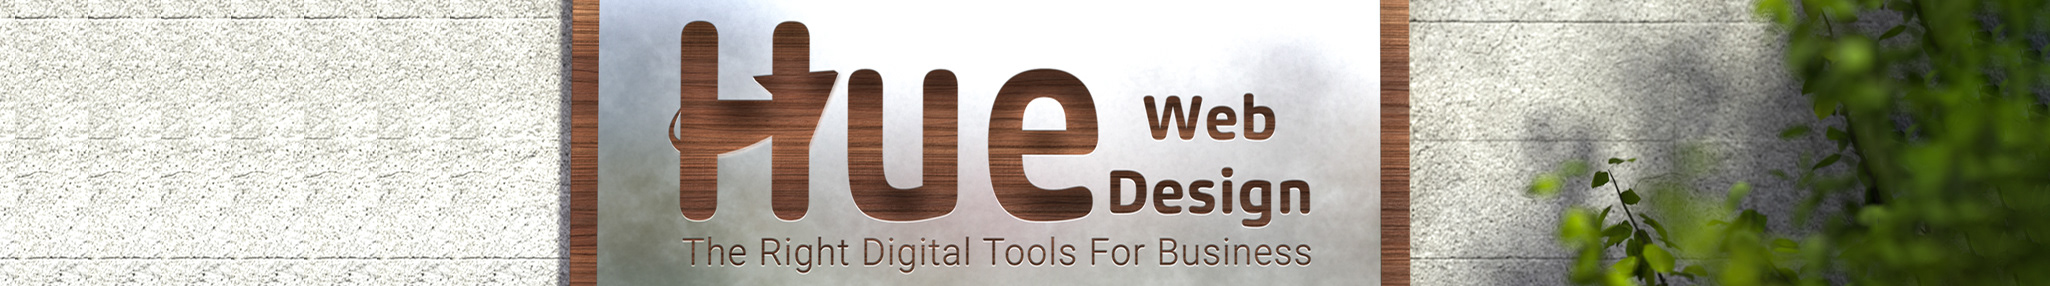 HUE Web Design's profile banner